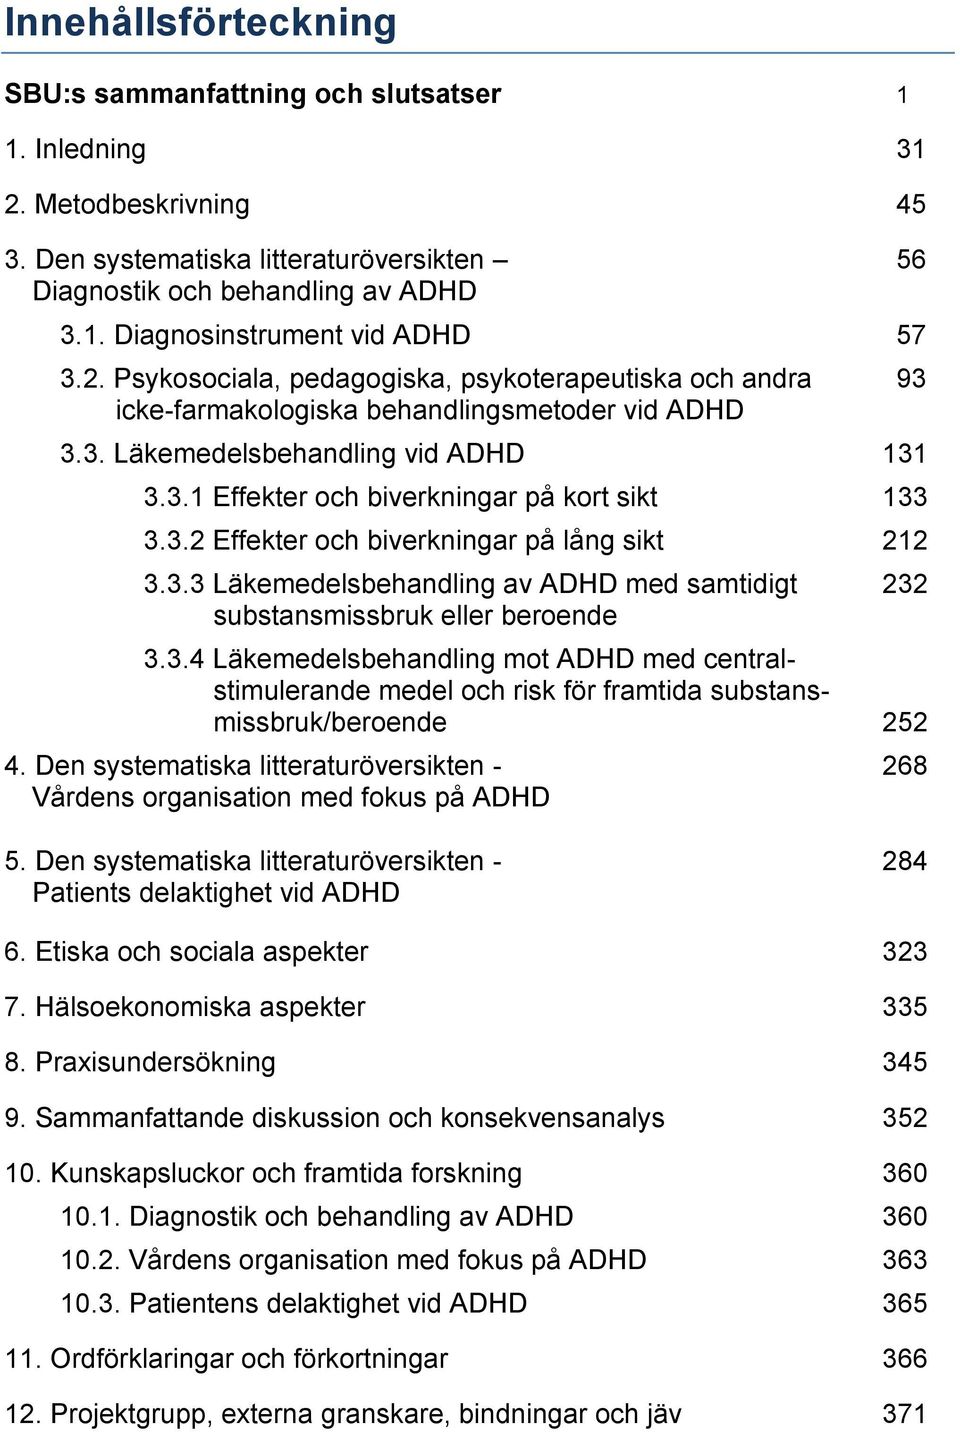 3.2 Effekter och biverkningar på lång sikt 212 3.3.3 Läkemedelsbehandling av ADHD med samtidigt 232 substansmissbruk eller beroende 3.3.4 Läkemedelsbehandling mot ADHD med centralstimulerande medel och risk för framtida substansmissbruk/beroende 252 4.